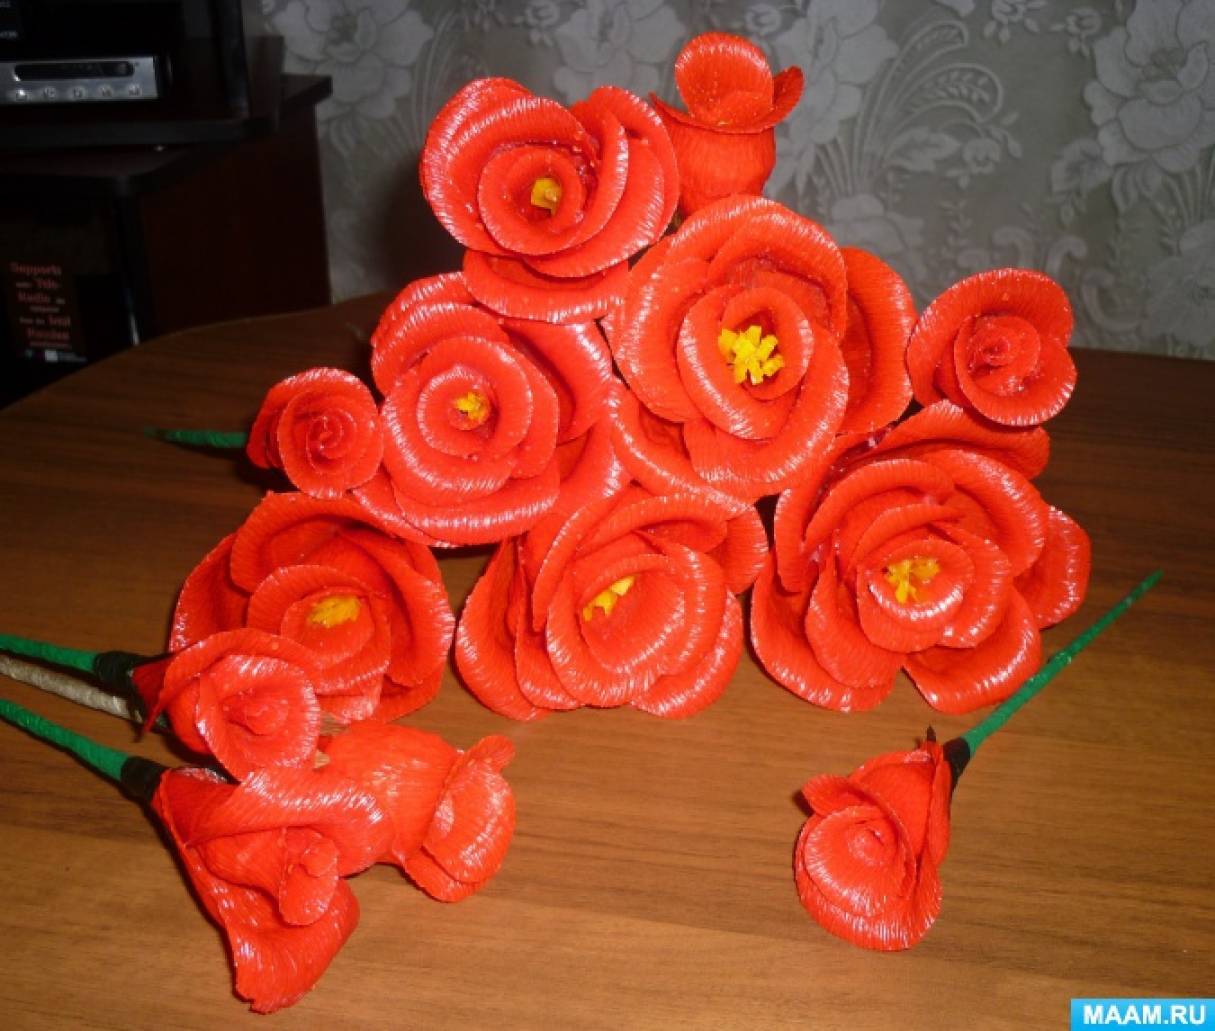 Антоніна Миколаївна Лисенко   Майстер-клас «Напарафіненние троянди в подарунок»   Шановні колеги, показувати Вам як зробити троянди з гофрованого паперу, зараз я не буду, тому що вже був мій майстер-клас